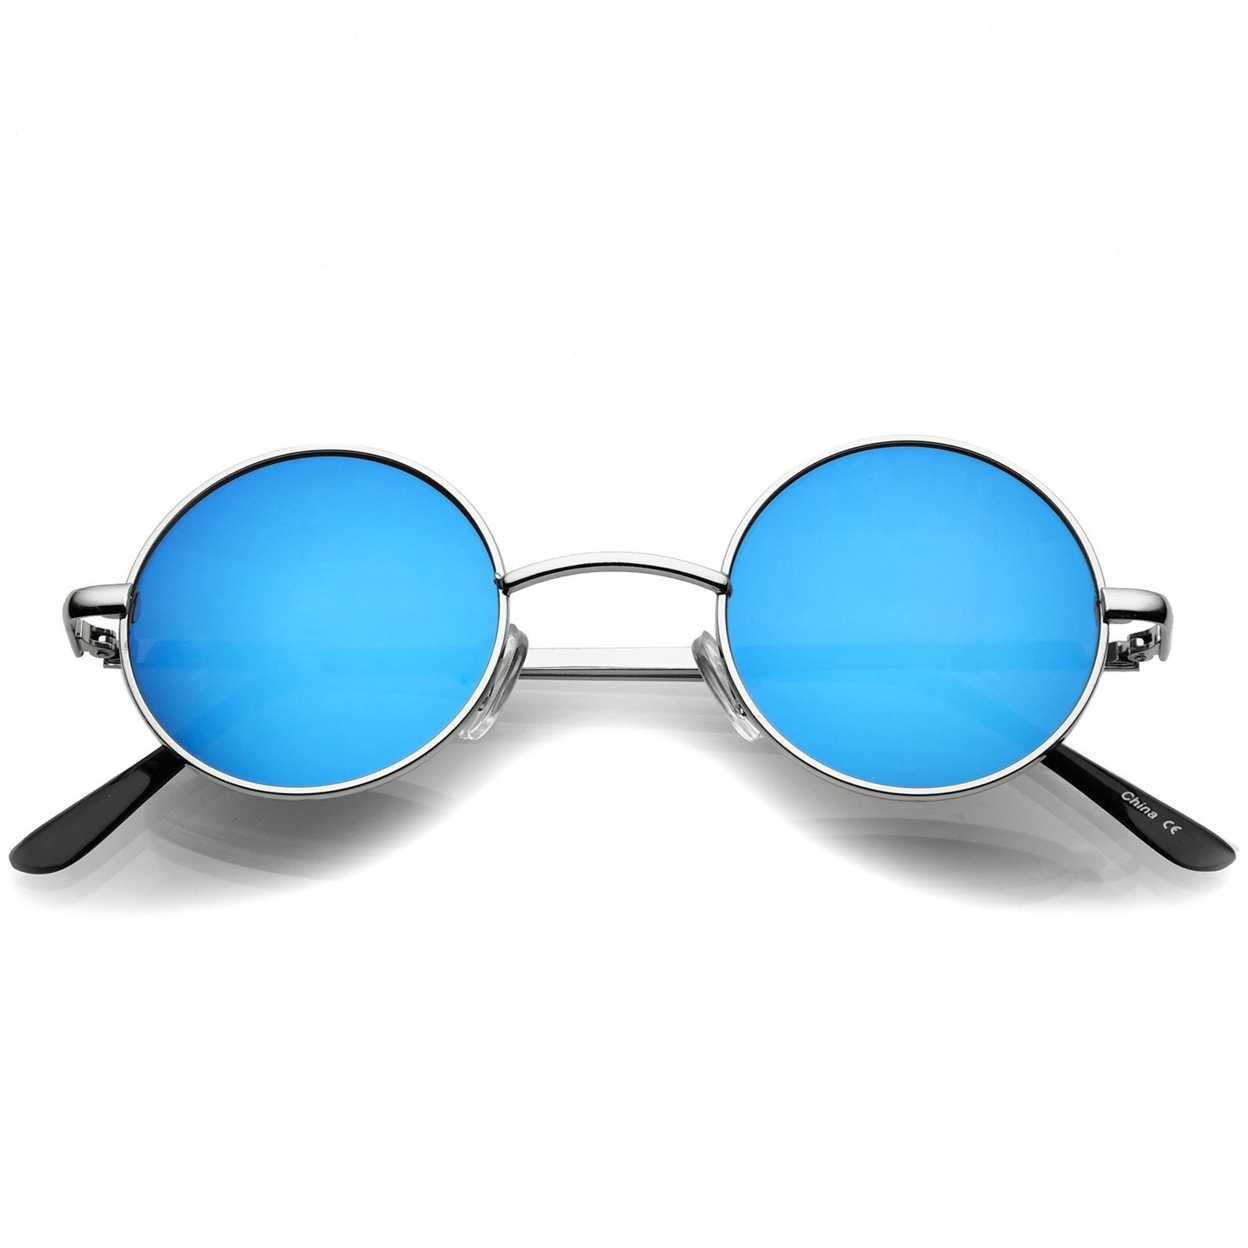 Small Retro Lennon Style Colored Mirror Lens Round Metal Sunglasses 41mm - Silver / Silver Mirror